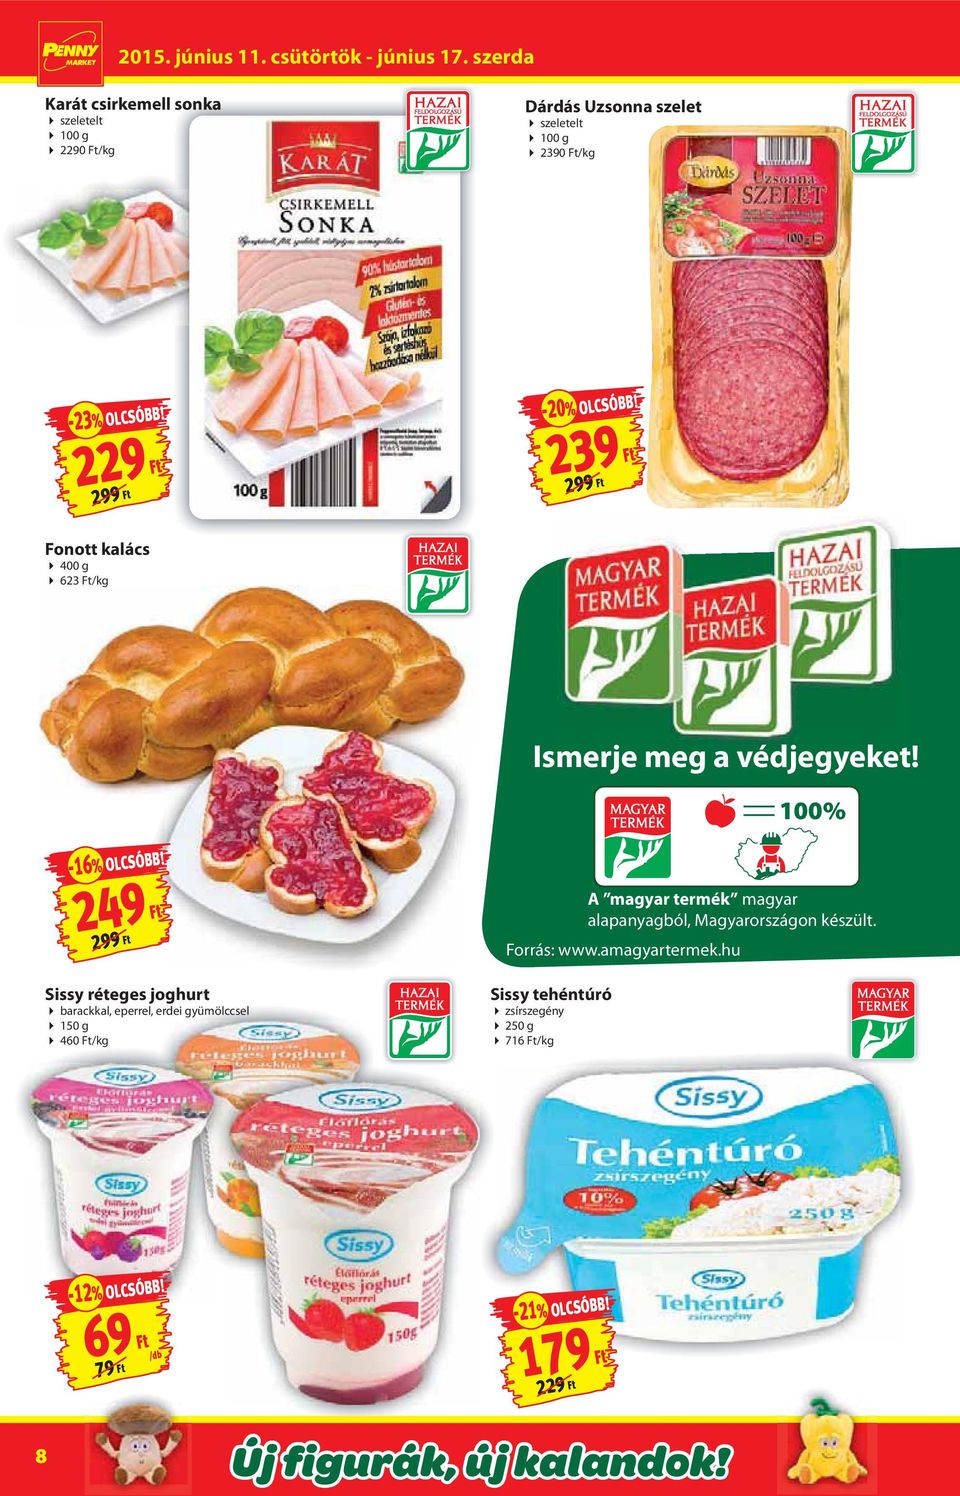 299 Ft A magyar termék magyar alapanyagból, Magyarországon készült. Forrás: www.amagyartermek.